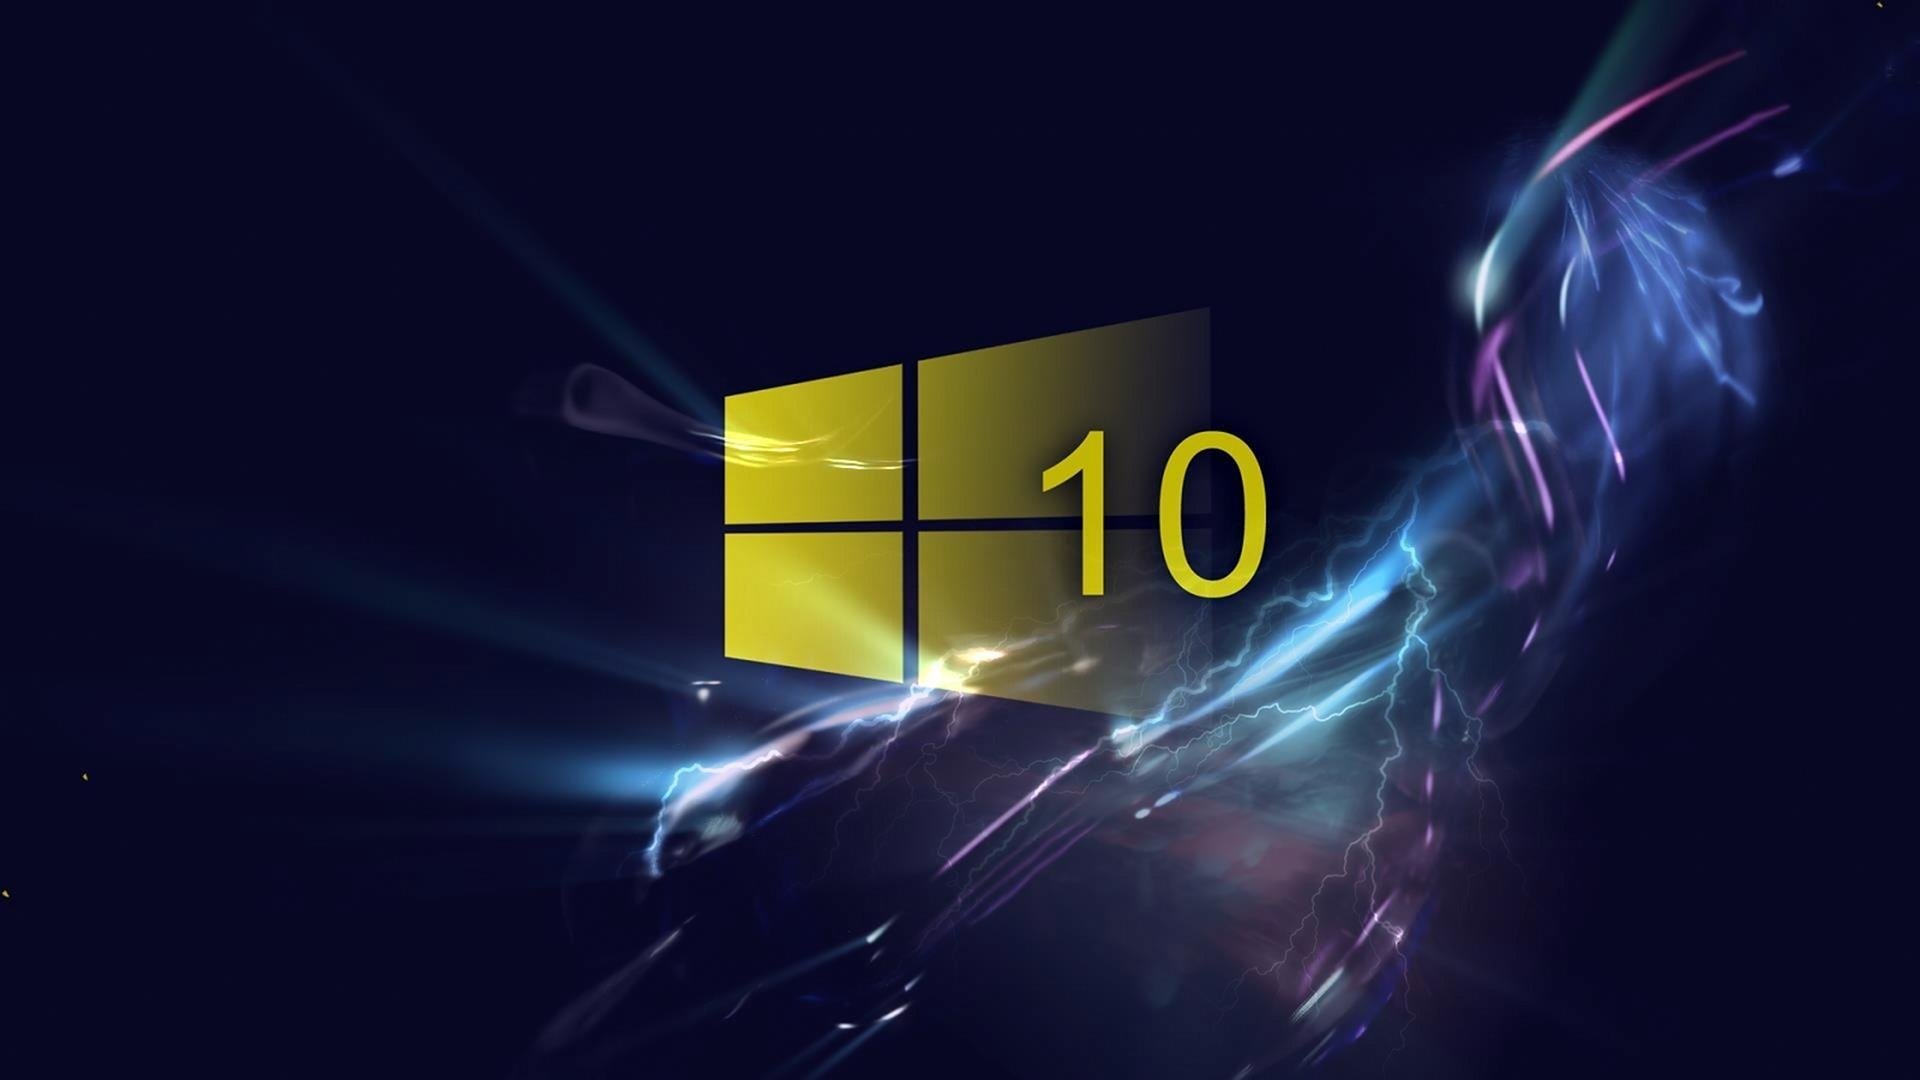 Tổng hợp 50 hình nền win 10 đẹp nhất  Hình nền máy tính  Wallpaper  windows 10 Windows 10 logo Windows wallpaper